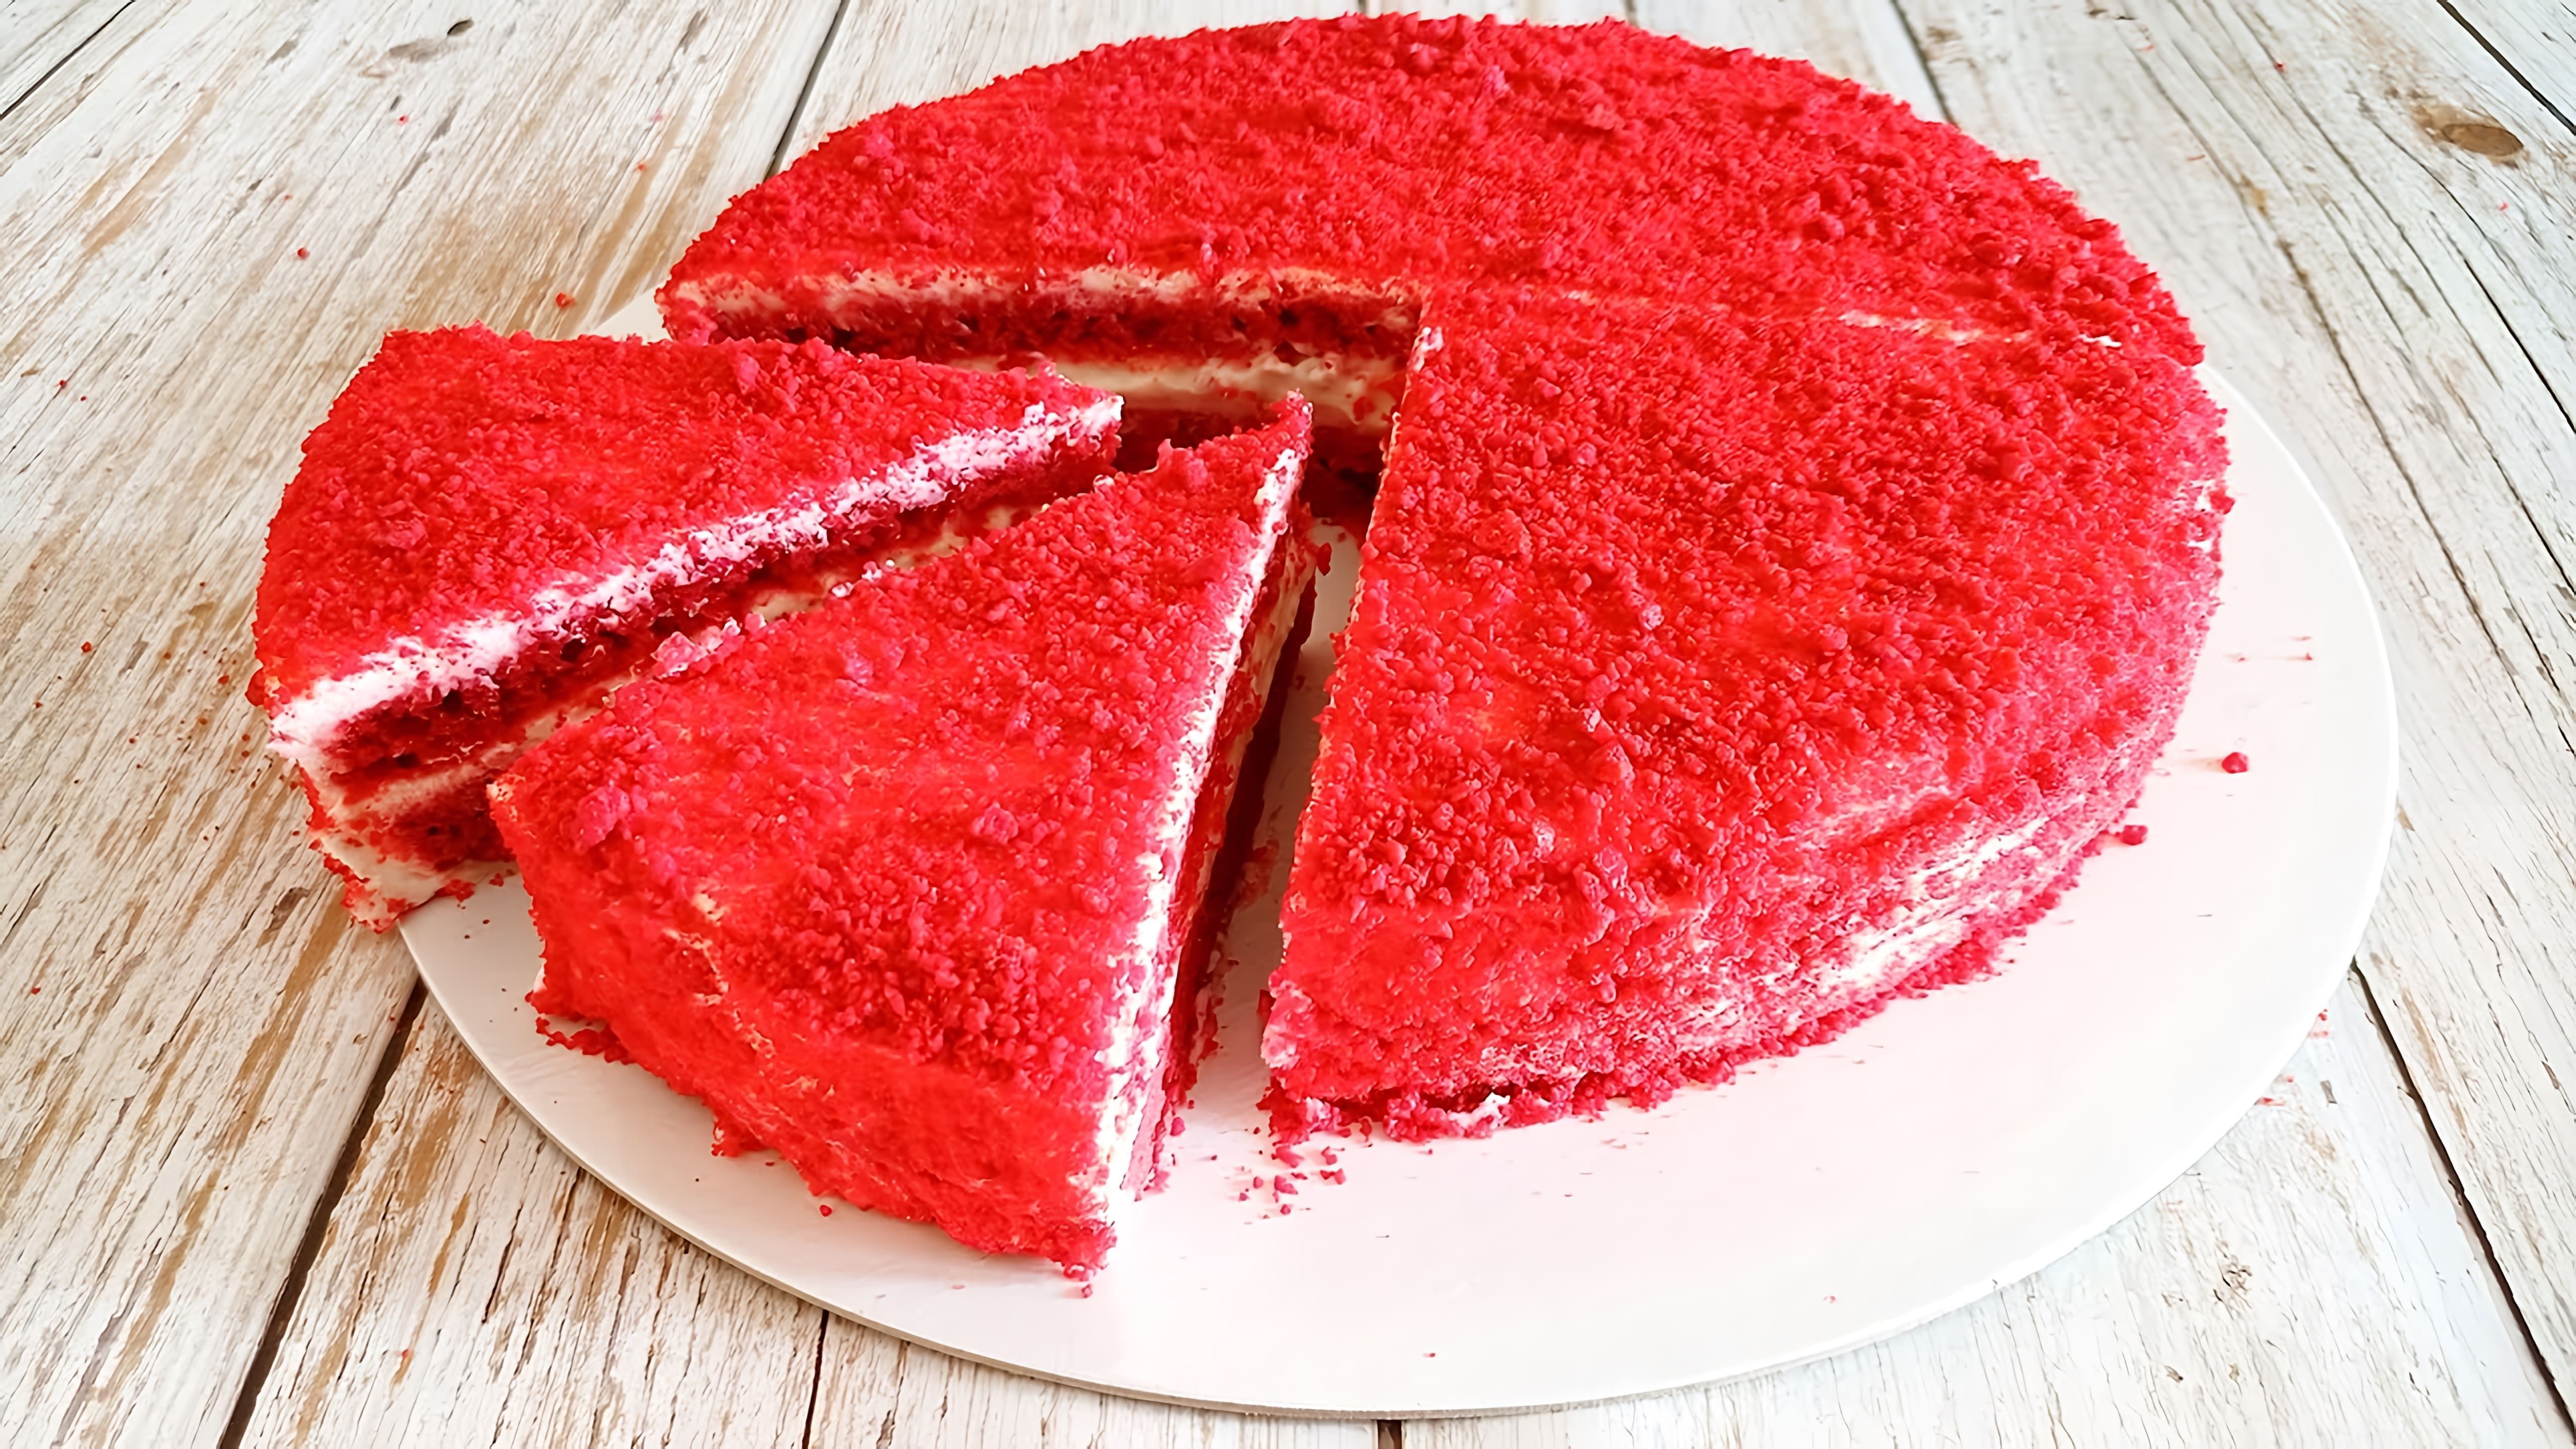 В этом видео демонстрируется рецепт кето-торта красный бархат без глютена и сахара